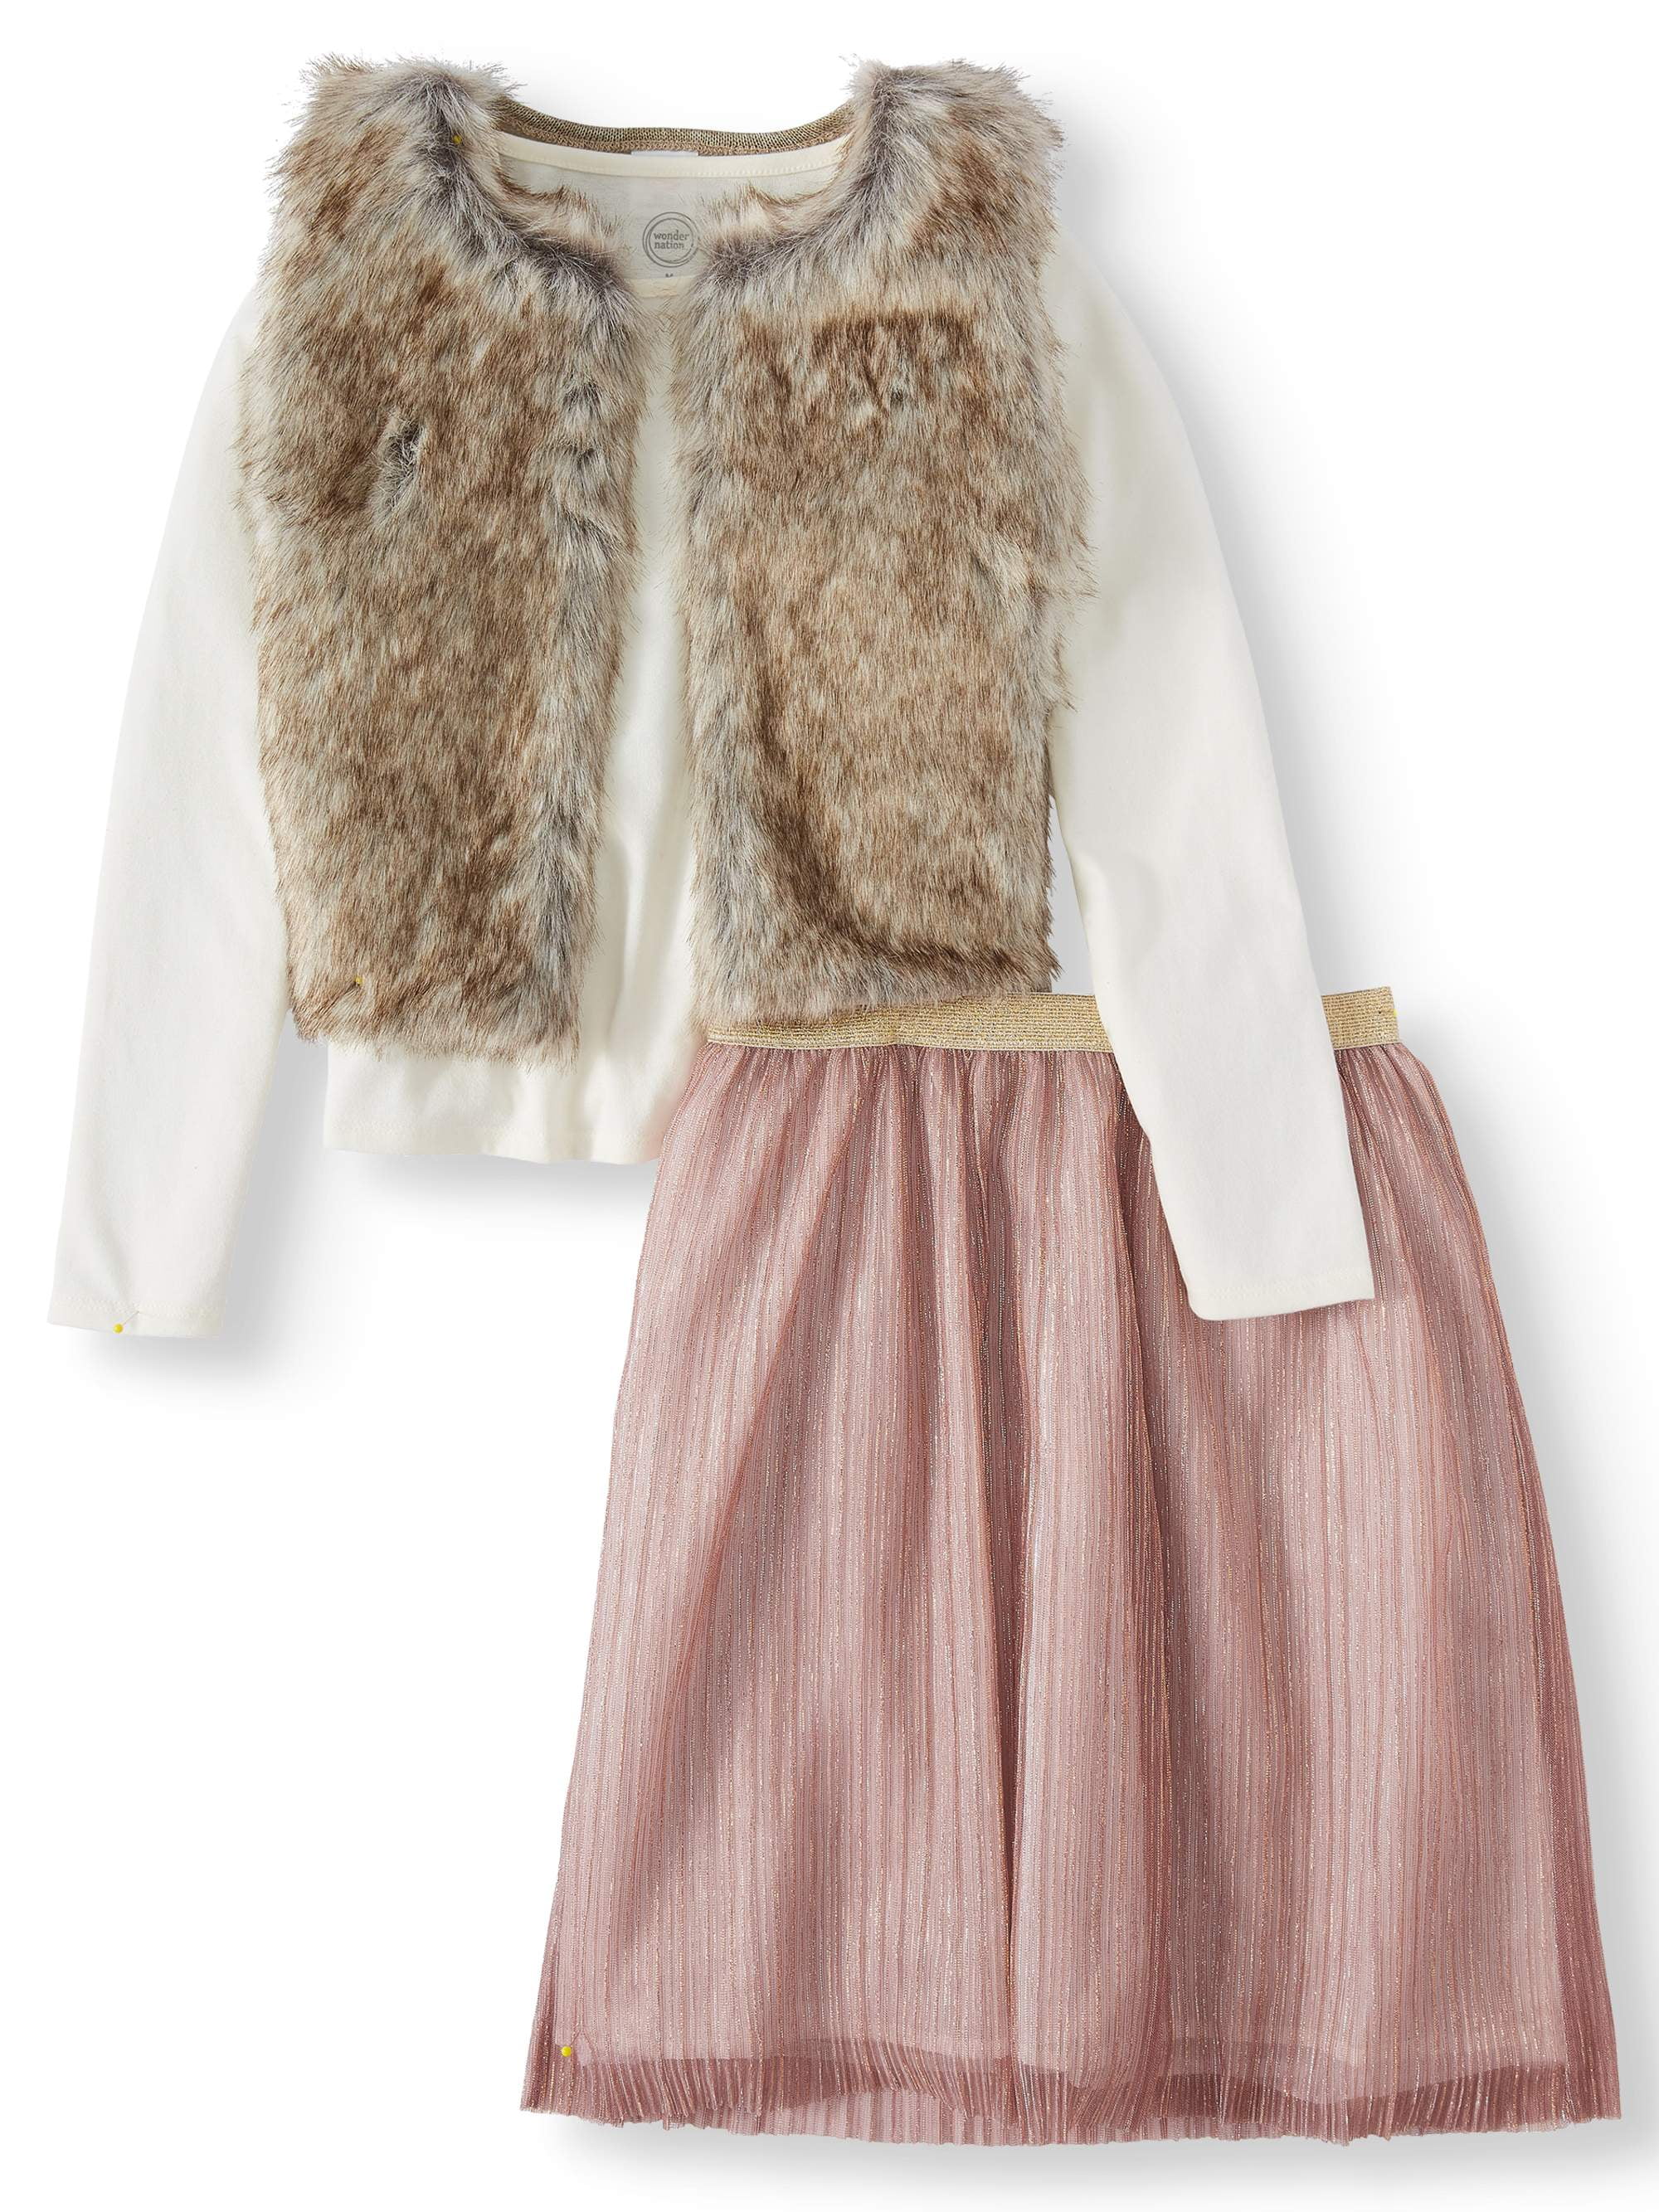 Girls vest Troll pink Fuzzy Fur XS 4 5 Small 6 7 Medium 8 10 XL 14 16 NEW